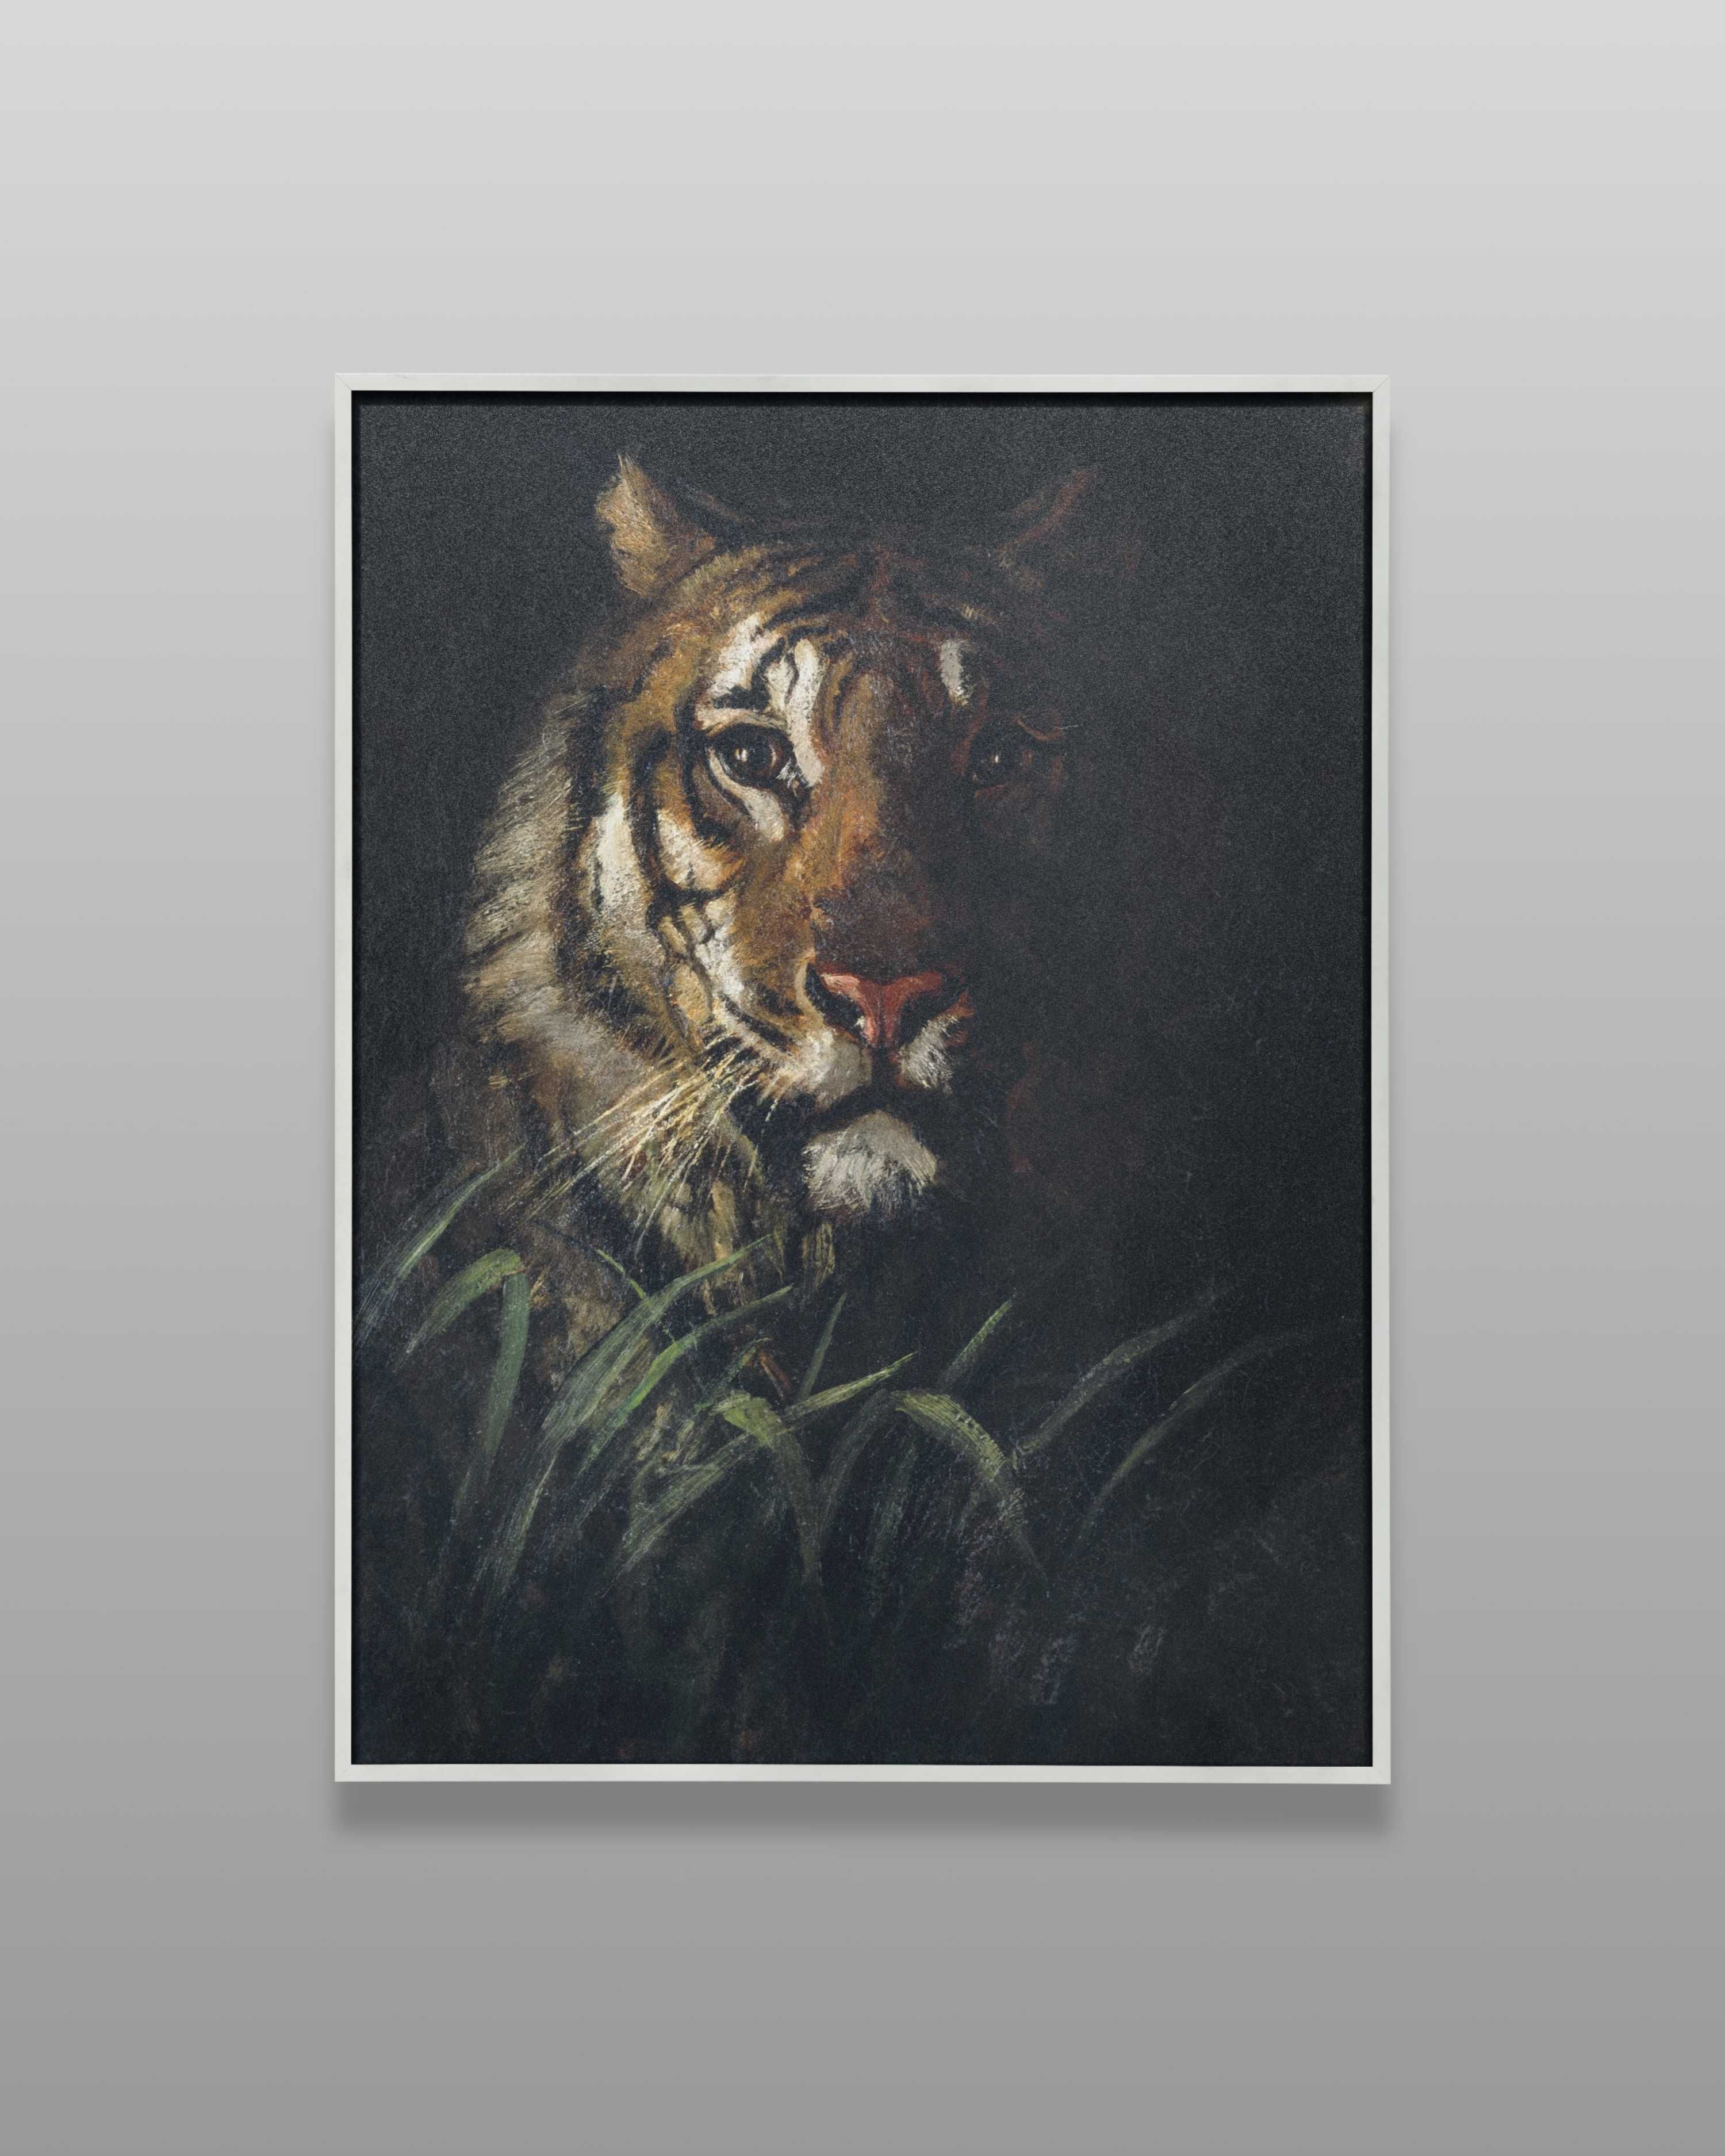 Plakat A3 Tiger's Head - Obraz, tygrys, wydruk Thayer#1